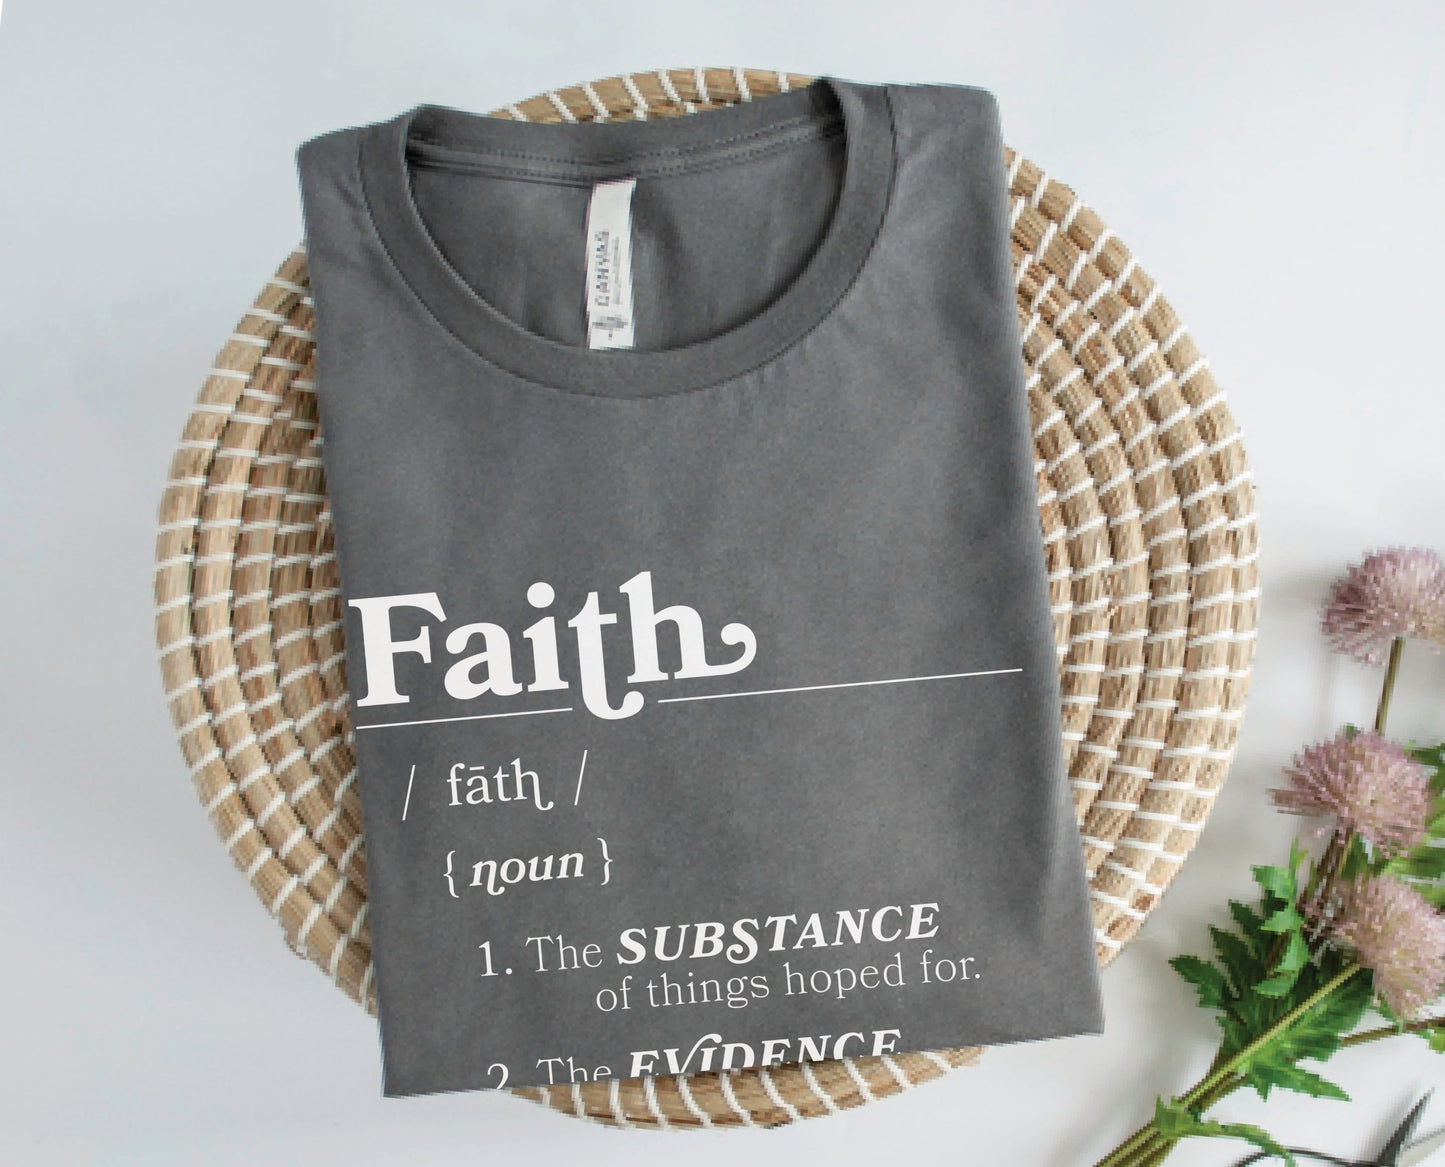 Faith Definition Hebrews 11:1 Christian aesthetic design printed in white on soft asphalt gray unisex t-shirt for women and men